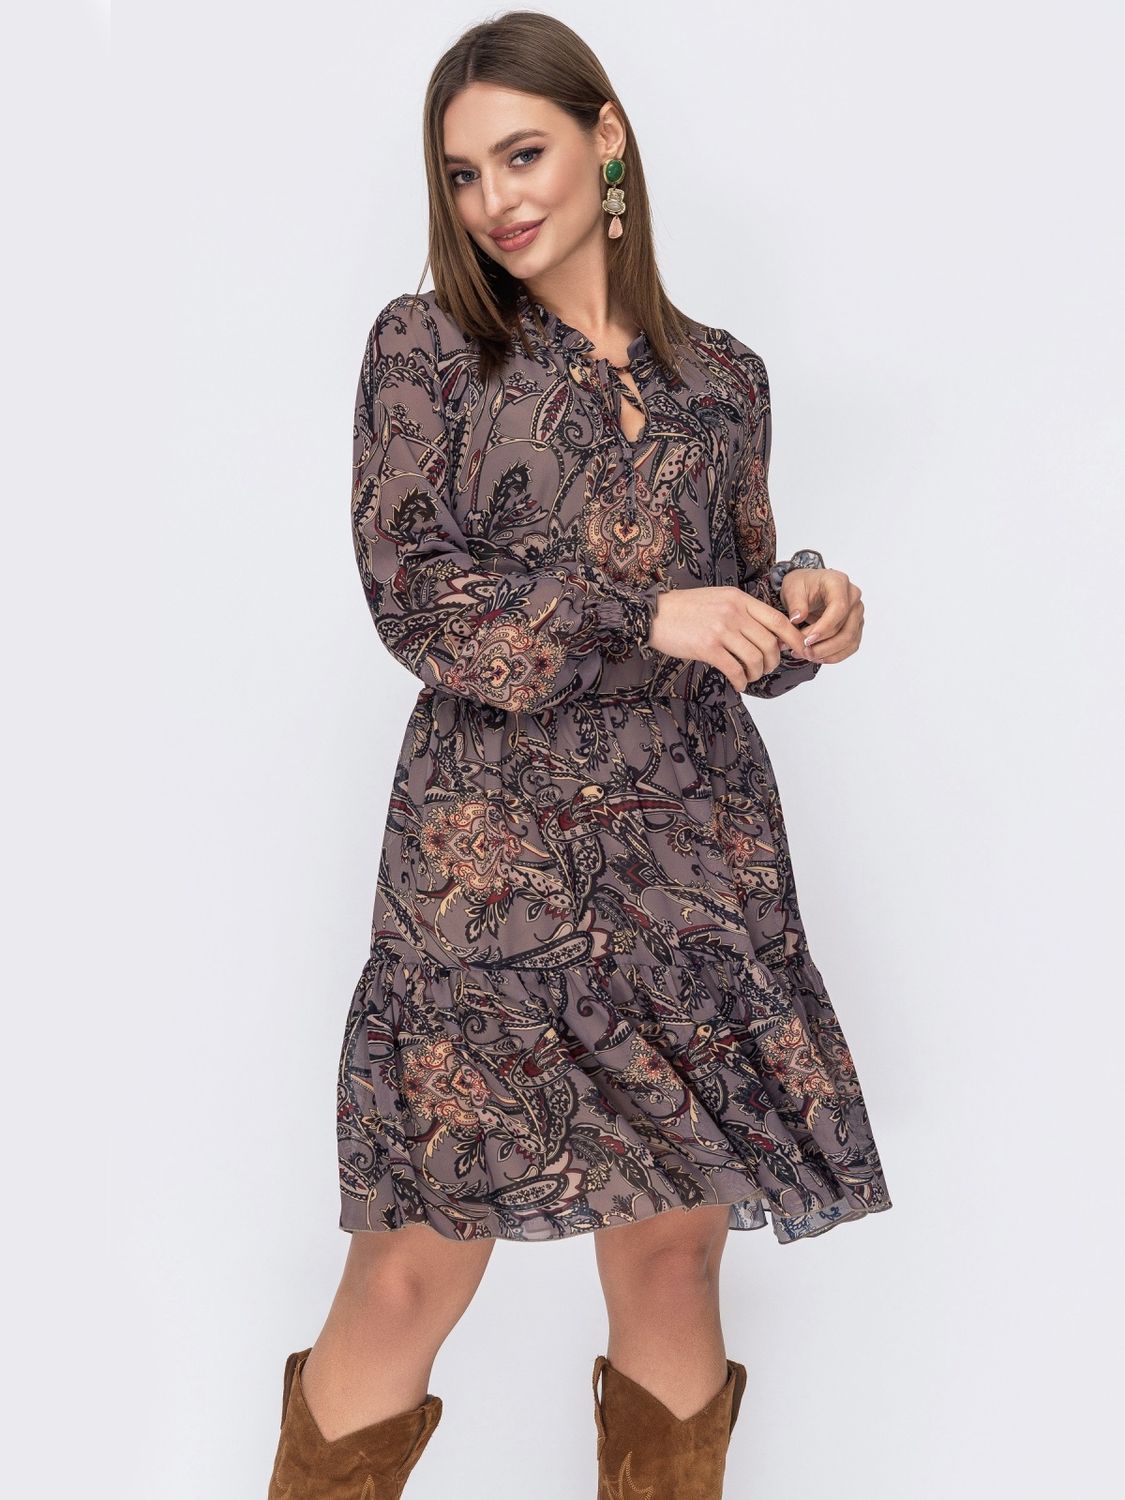 Шифоновое платье коричневого цвета с широким воланом - фото